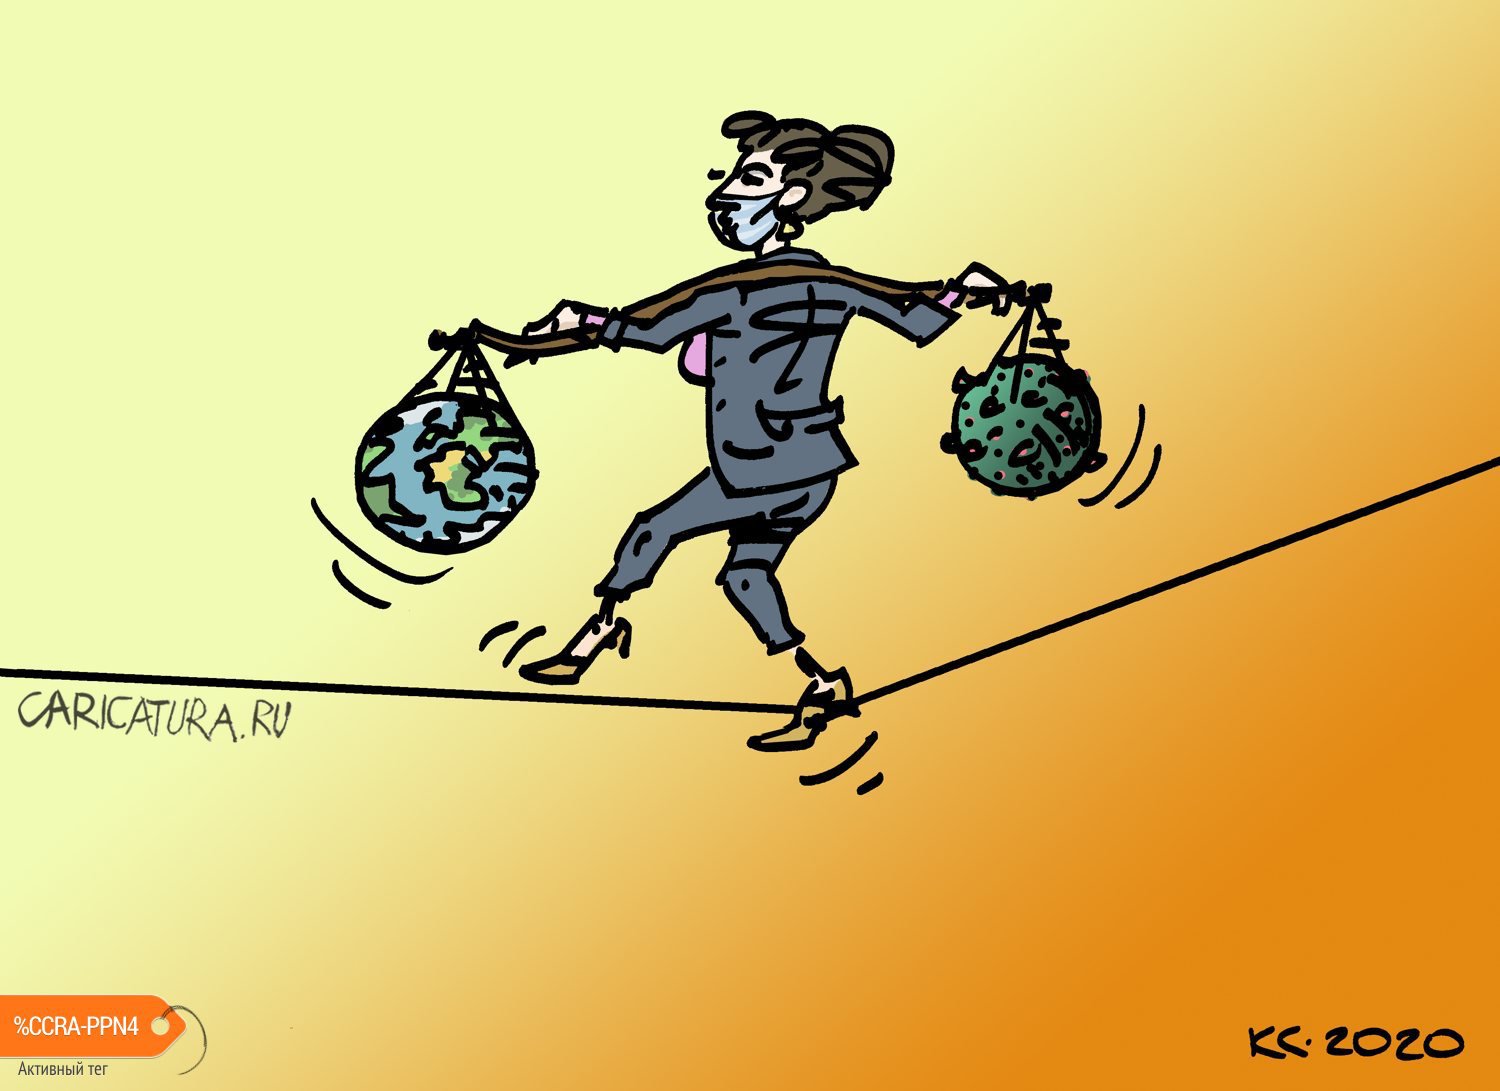 Карикатура "Неустойчивое равновесие", Вячеслав Капрельянц